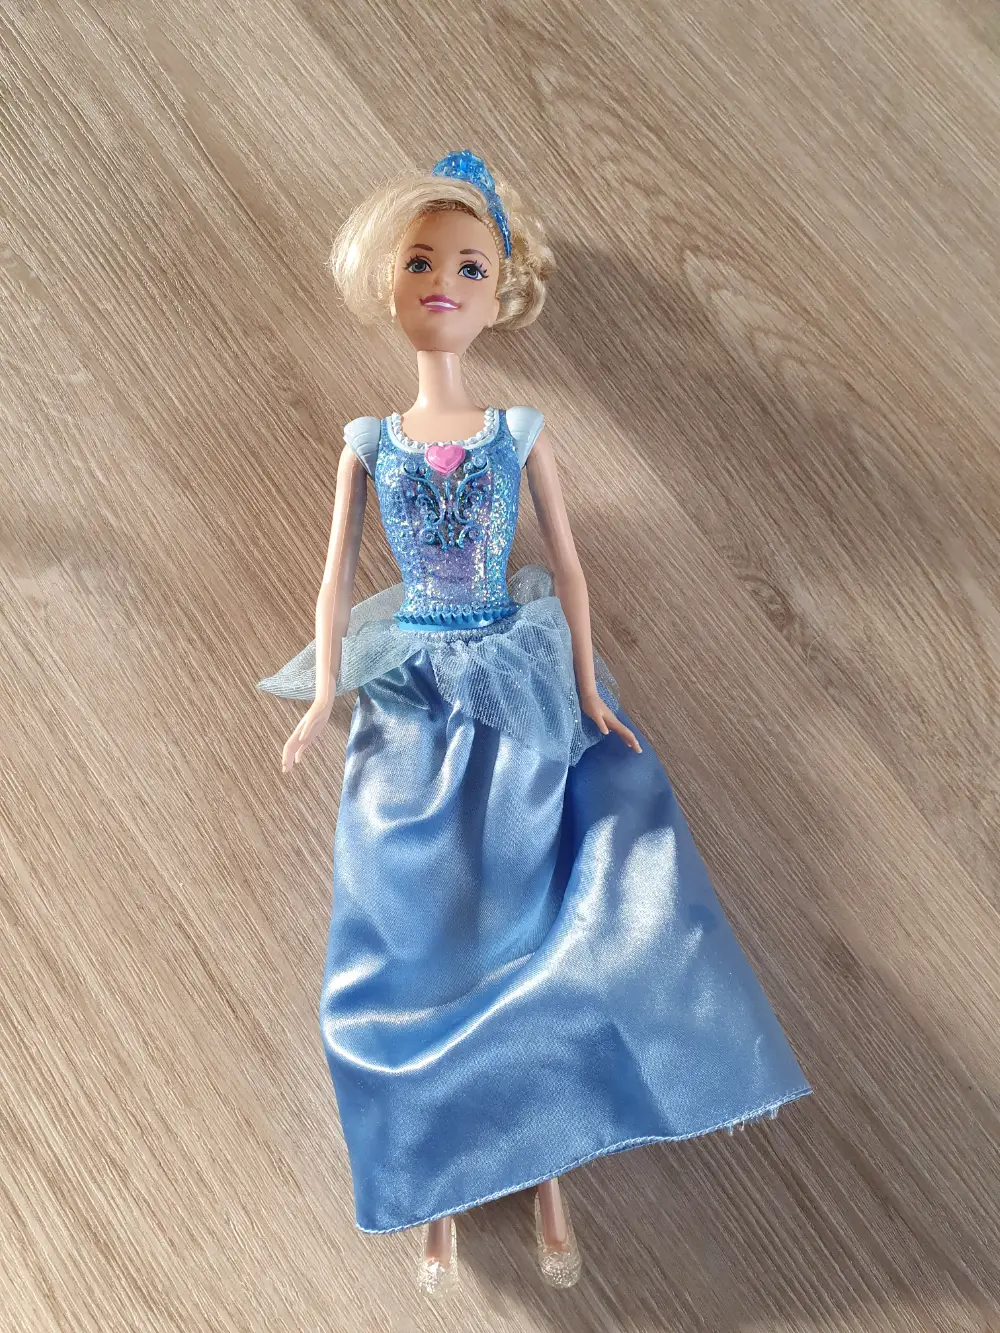 Køb Barbie Askepot af Janne på Reshopper · secondhand børn, mor og bolig